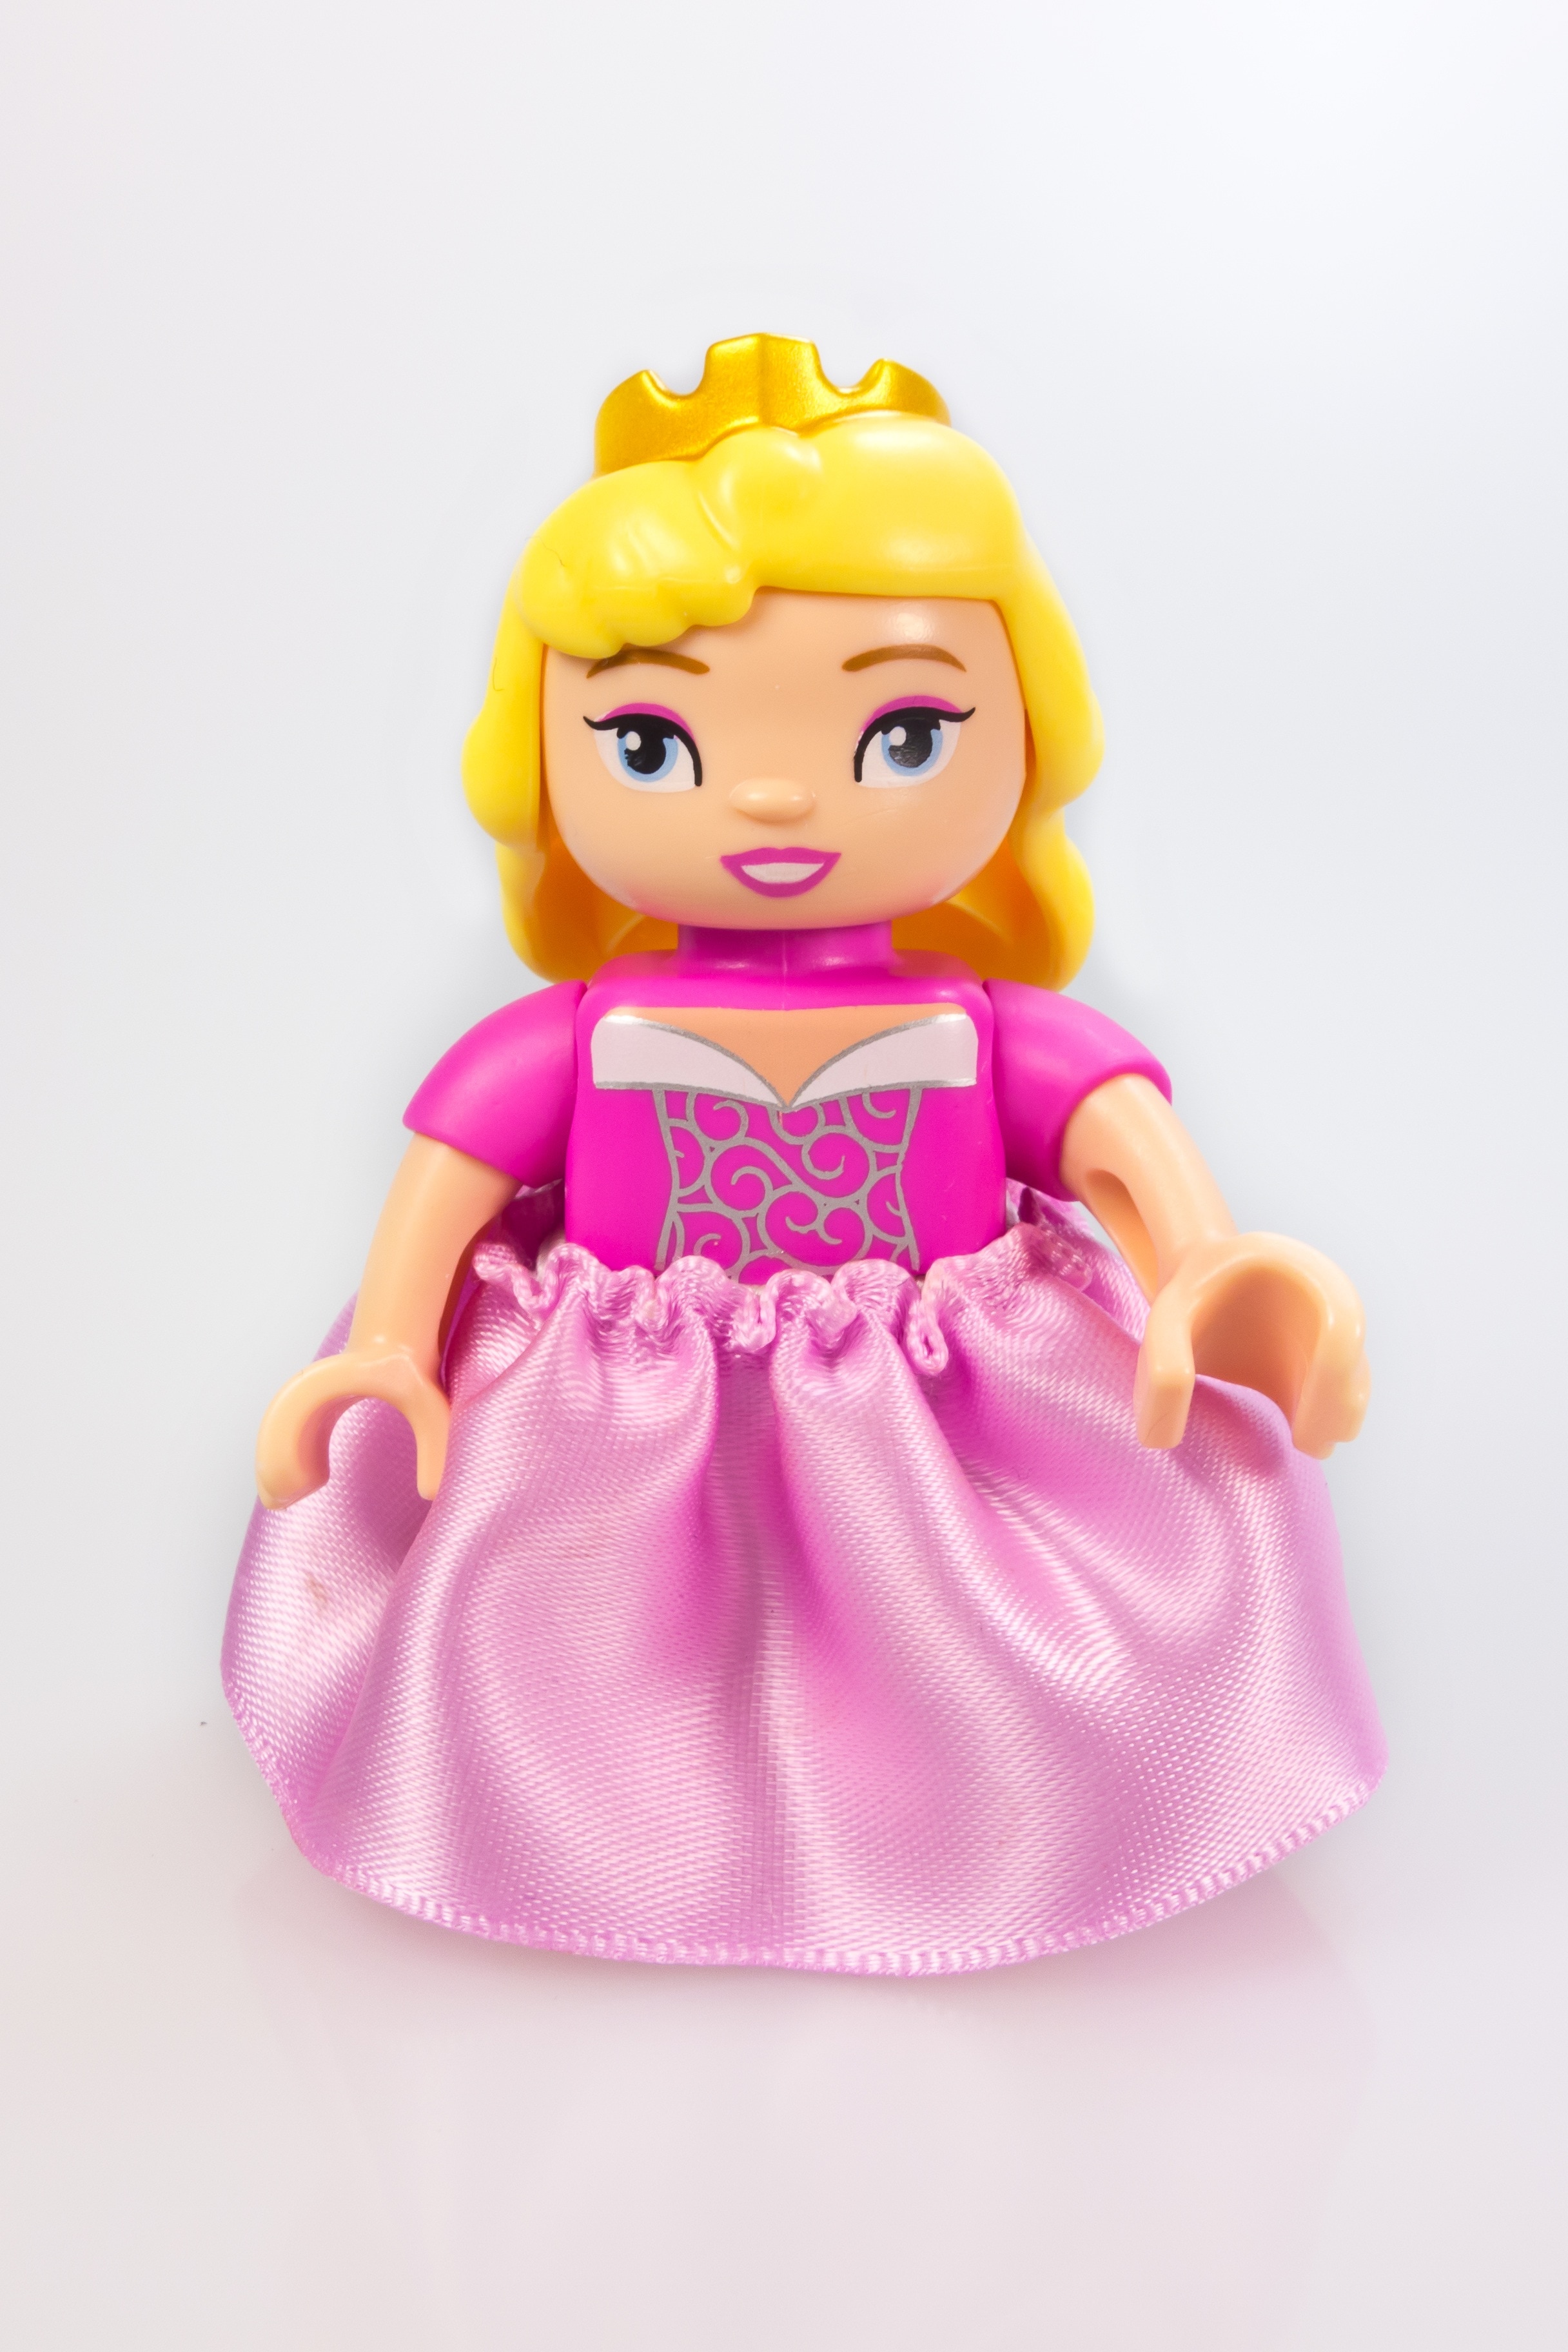 disney princess lego minifig